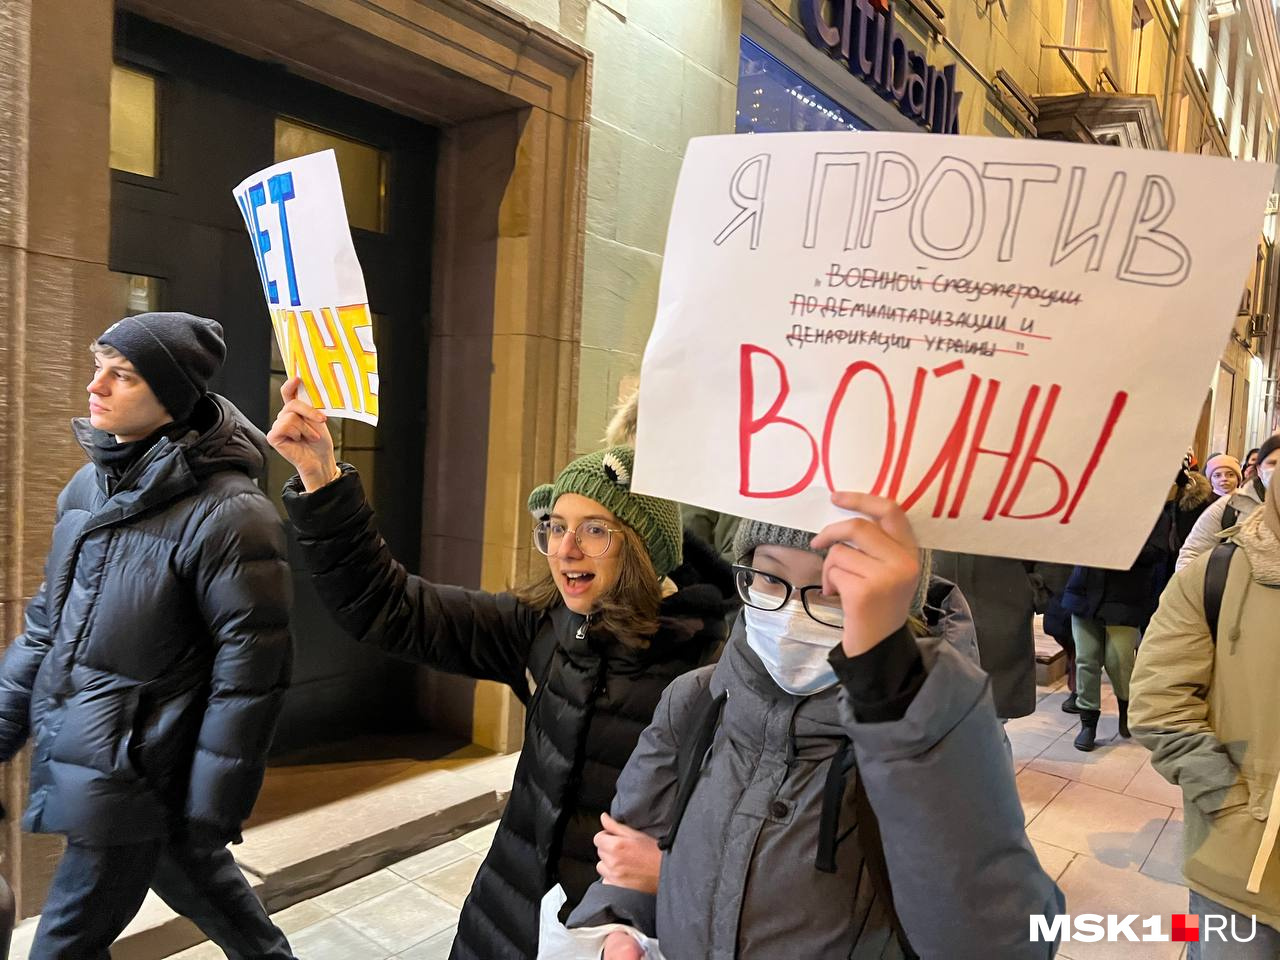 Выйти против войны. Митинг с плакатами. Антивоенный митинг в Москве. Против войны. Антивоенные пикеты Москва.